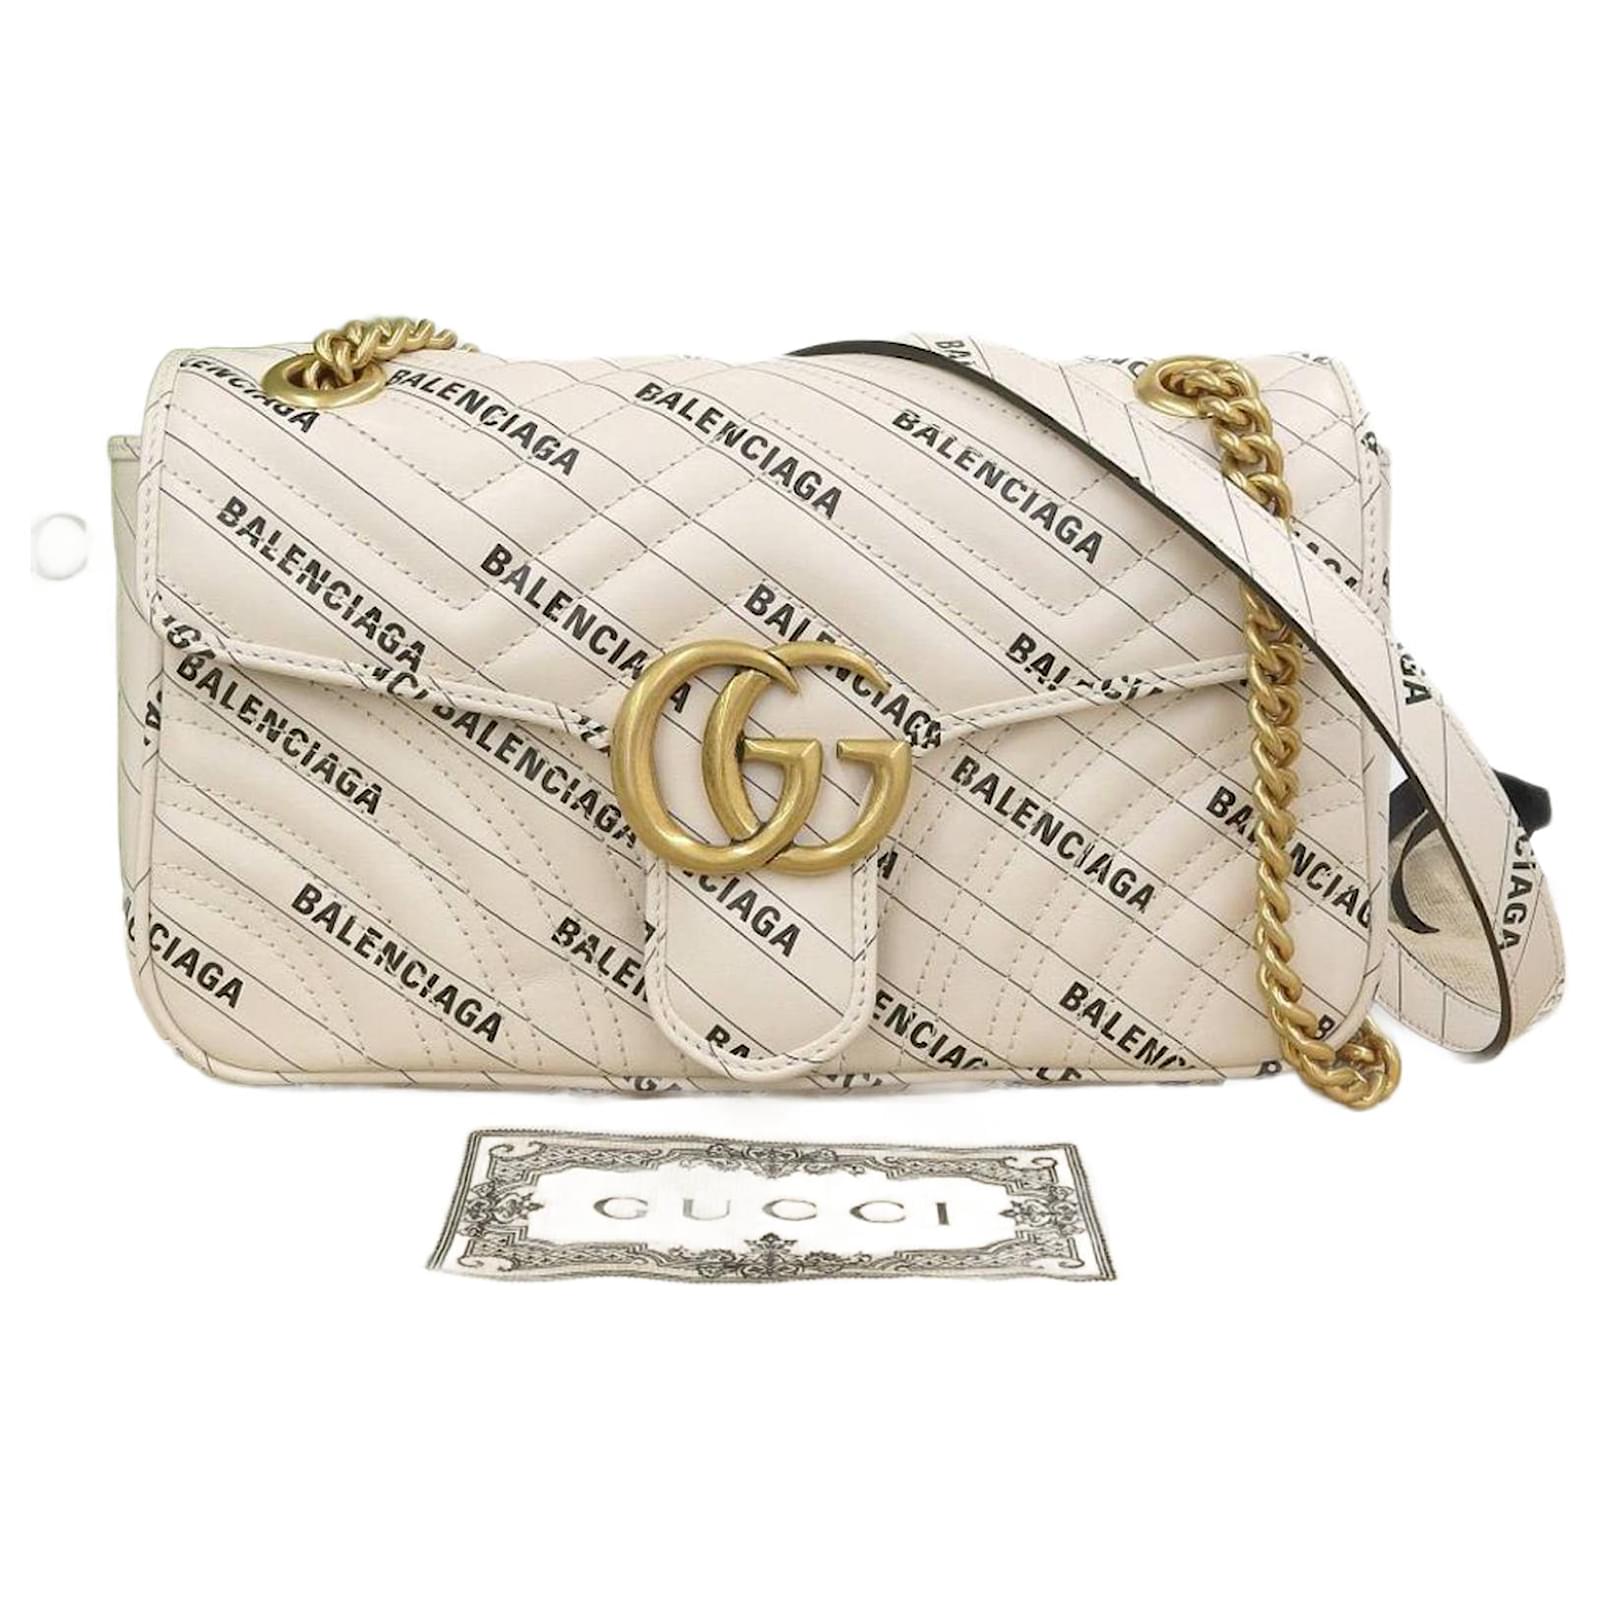 Gucci: White Super Mini GG Marmont Bag